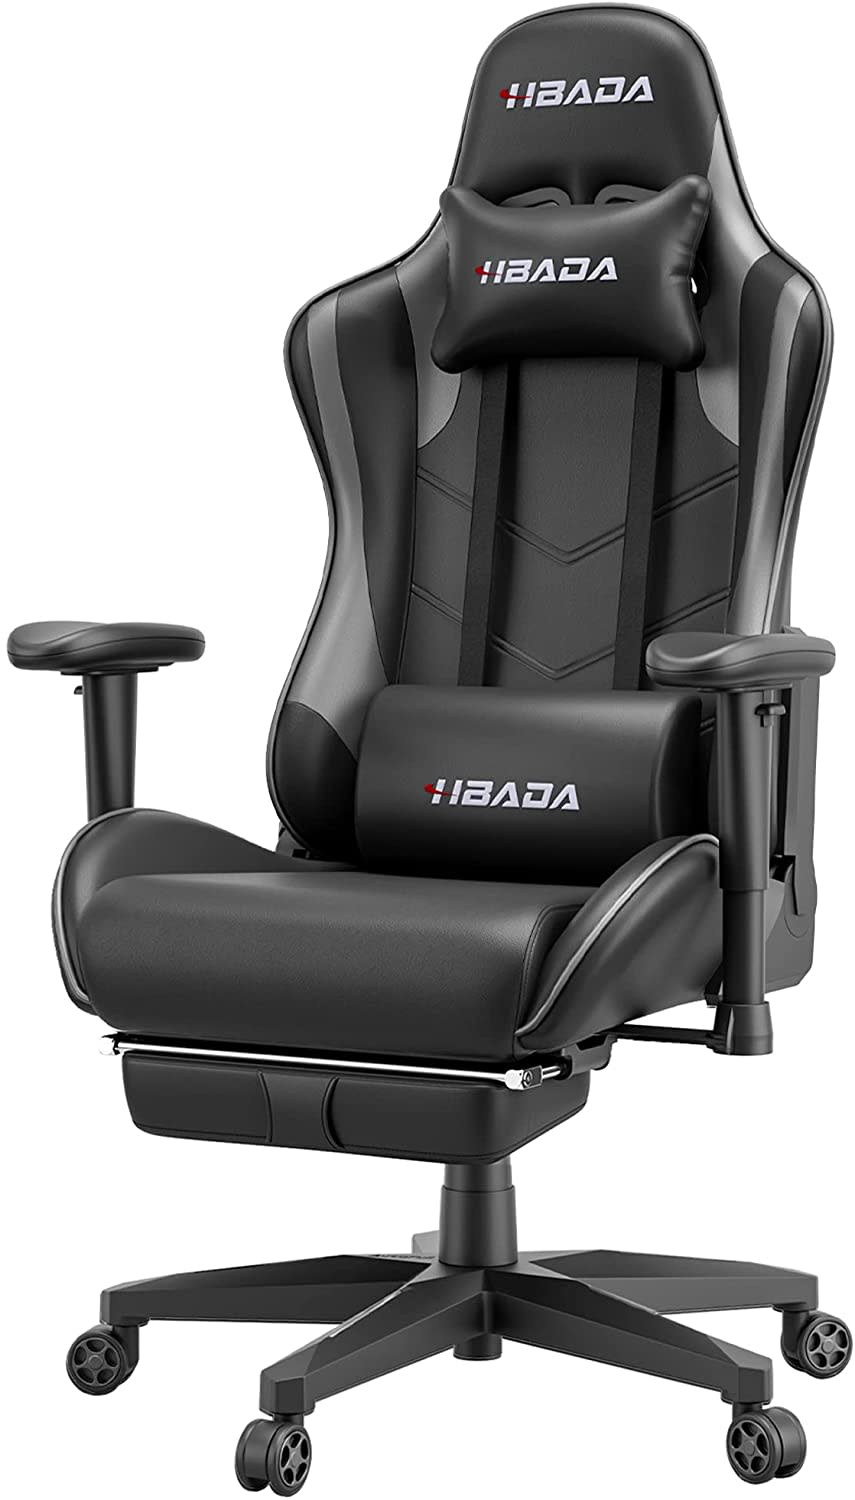 Hbada Gaming Chair, best gifts for boyfriend